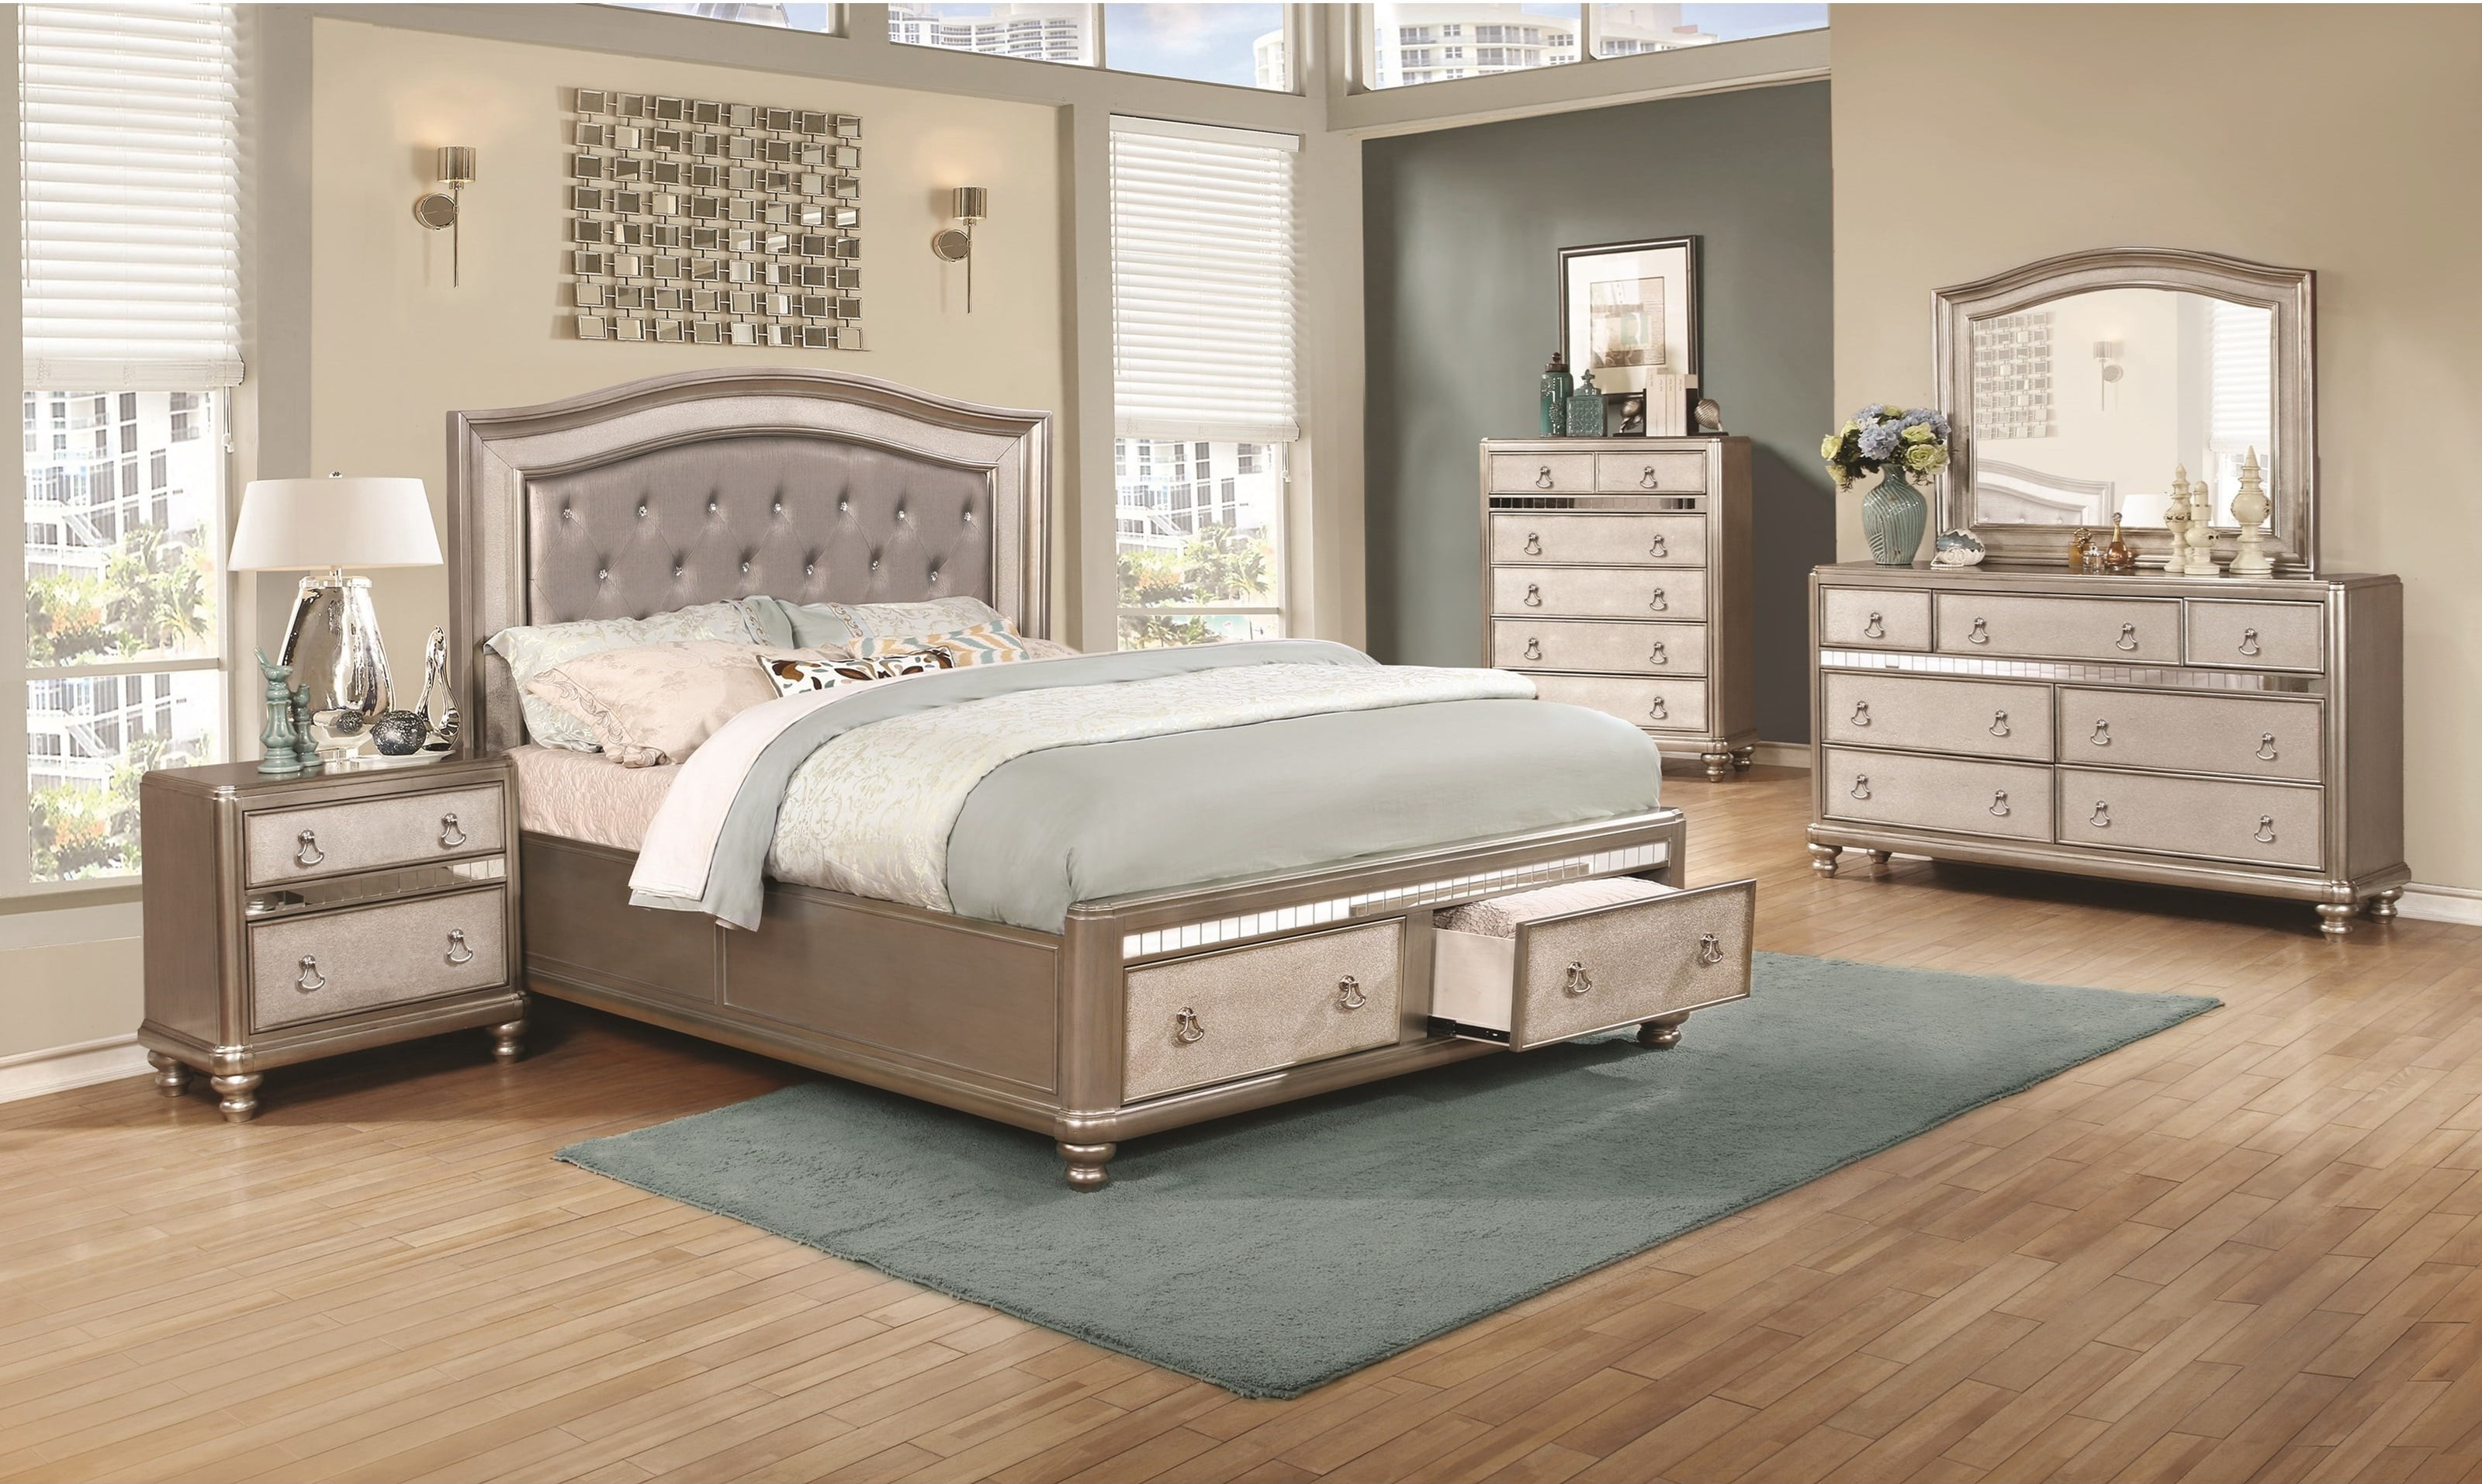 elegance beds and mattress